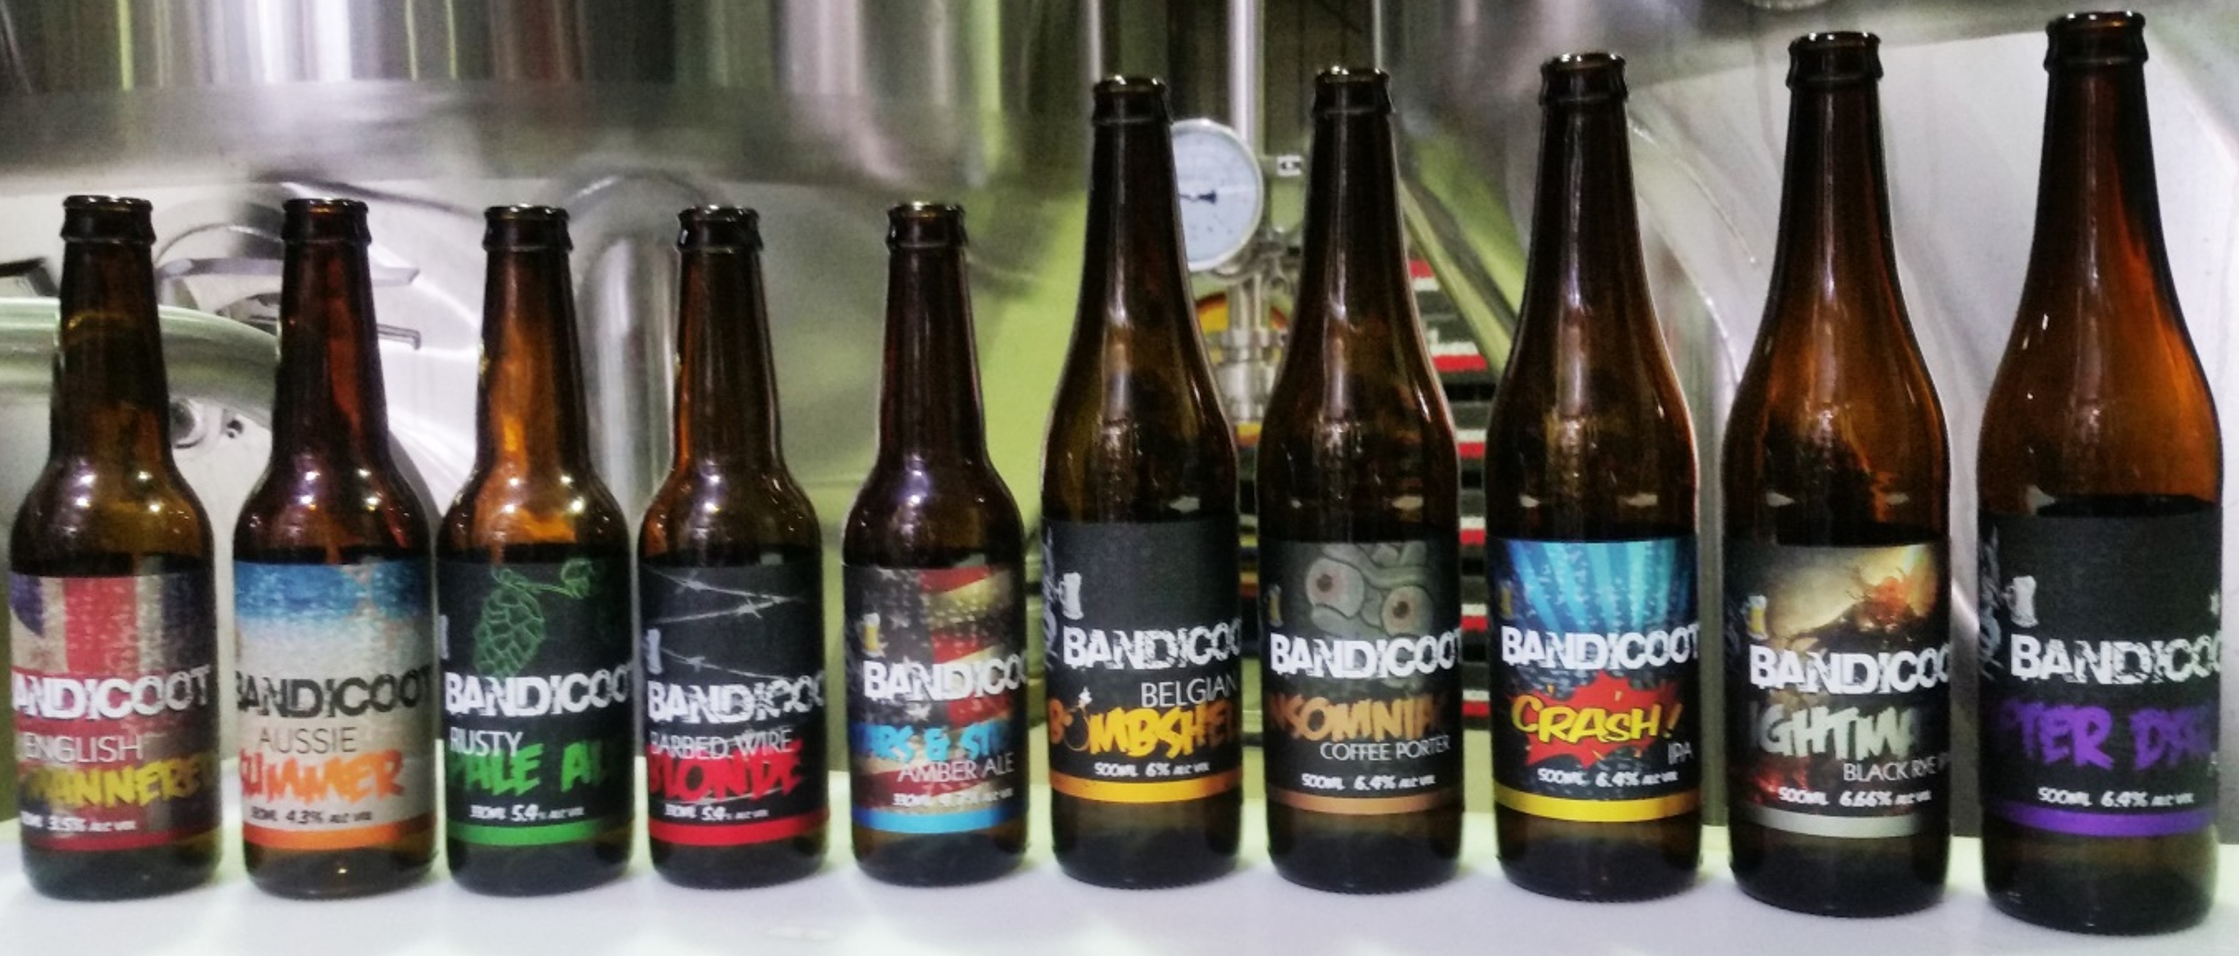 Bandicoot beers